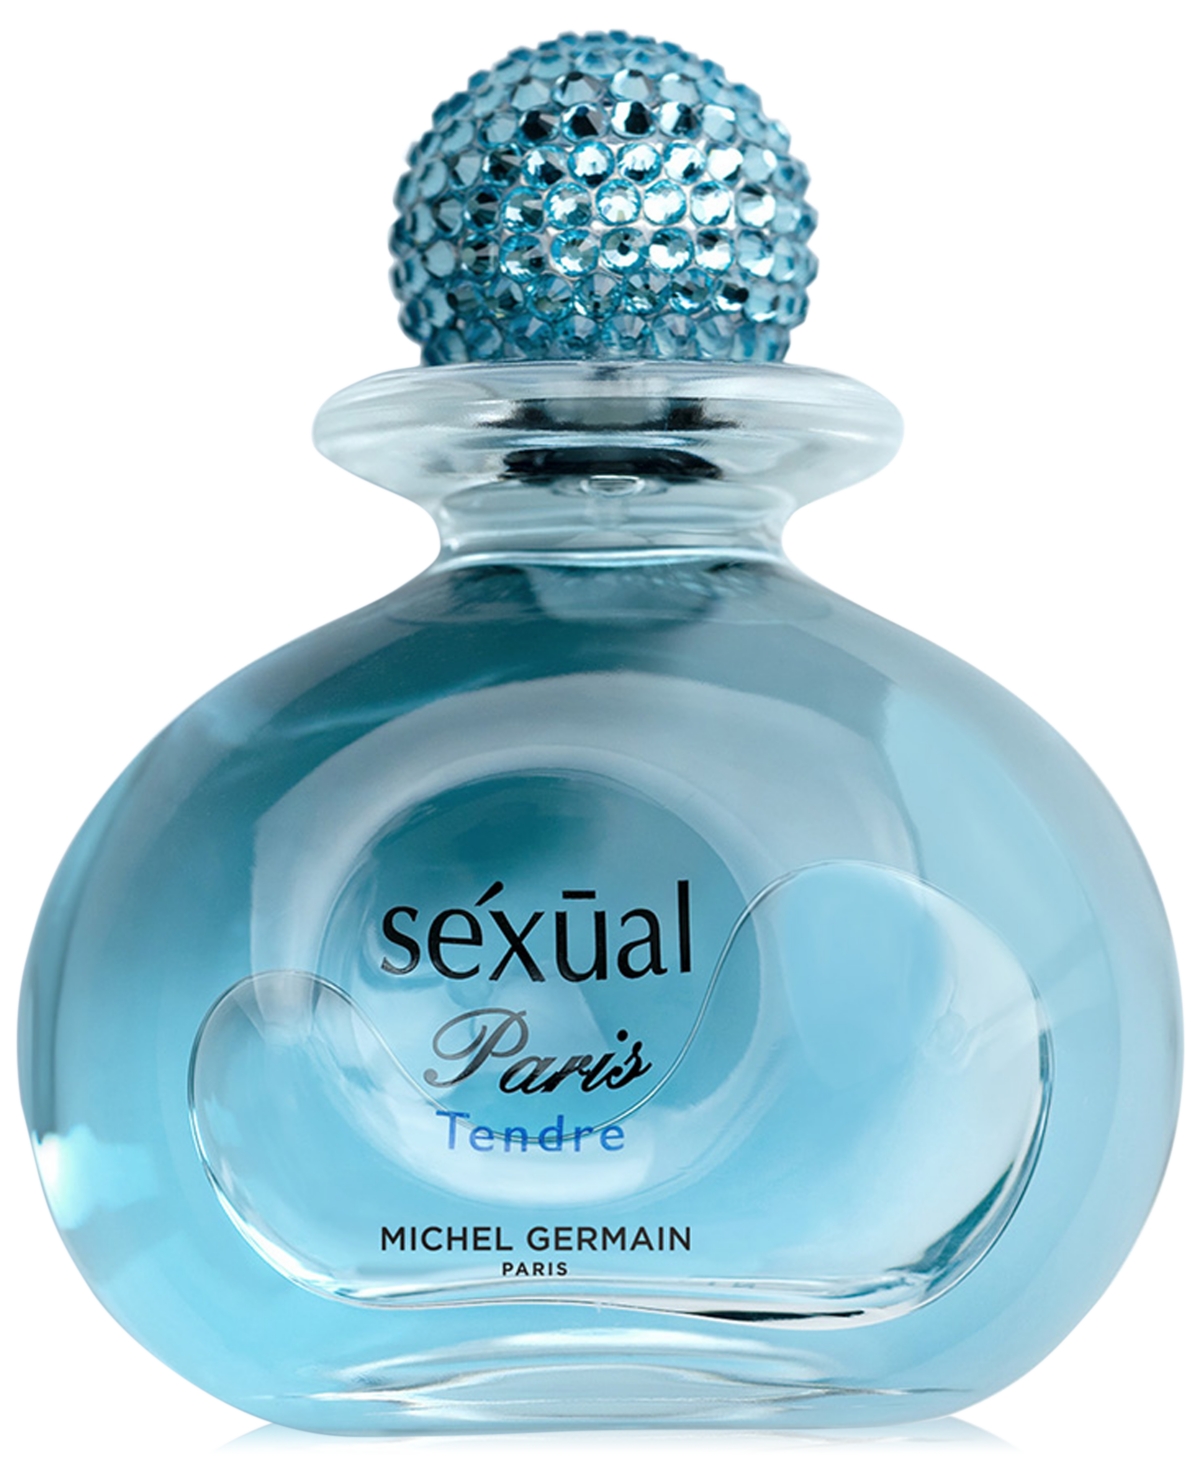 Lady's Sexual Paris Tendre Eau de Parfum, 4.2 oz